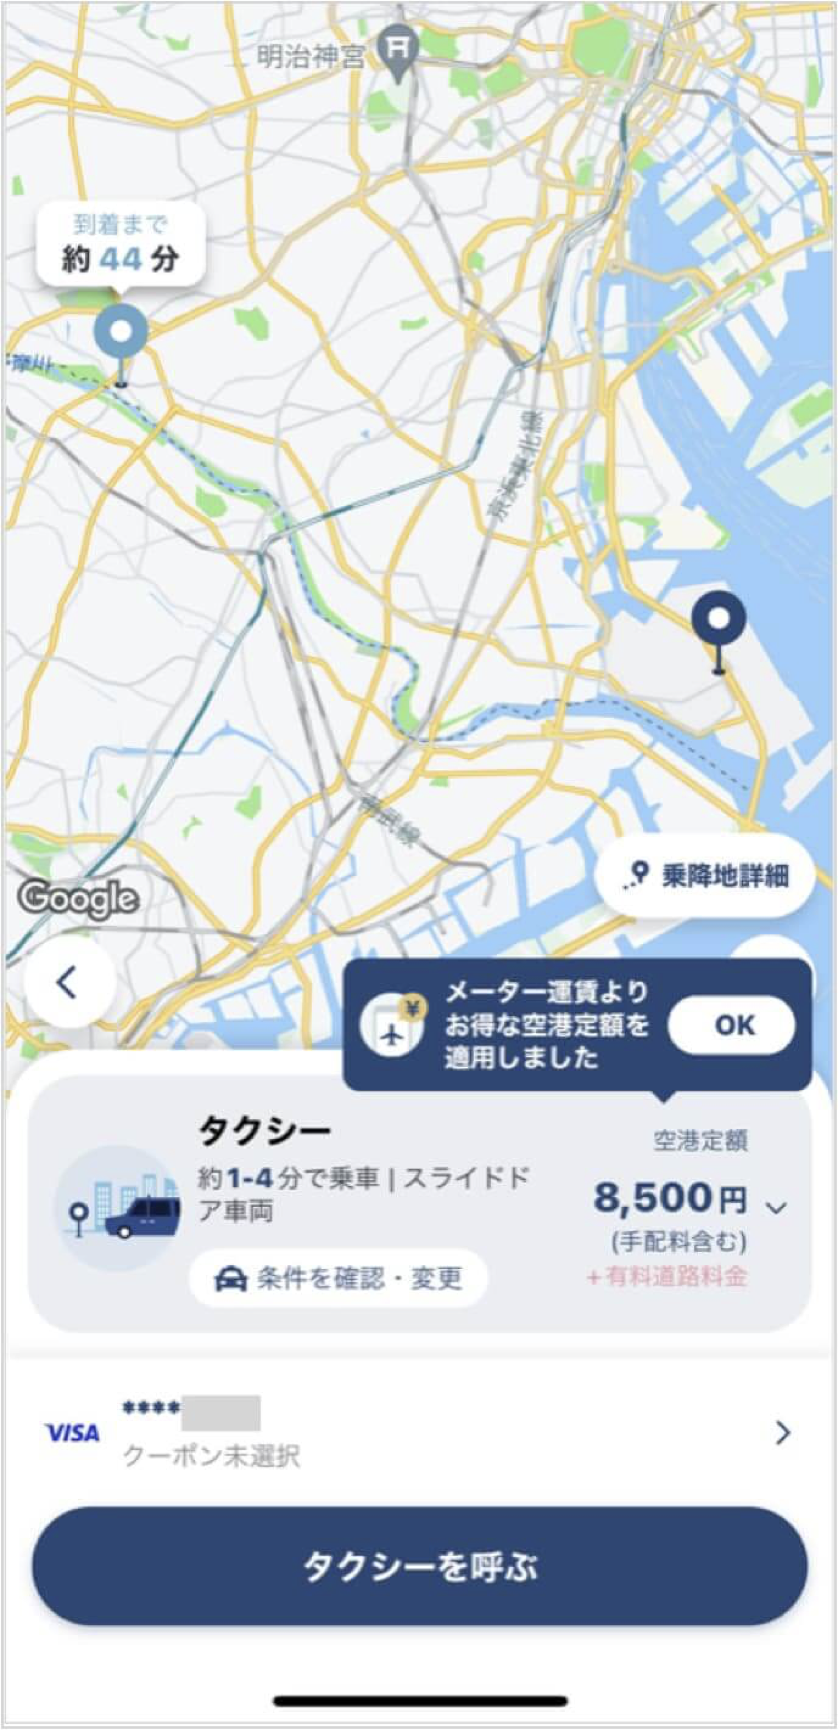 羽田空港から吉祥寺までのタクシー料金・所要時間まとめ